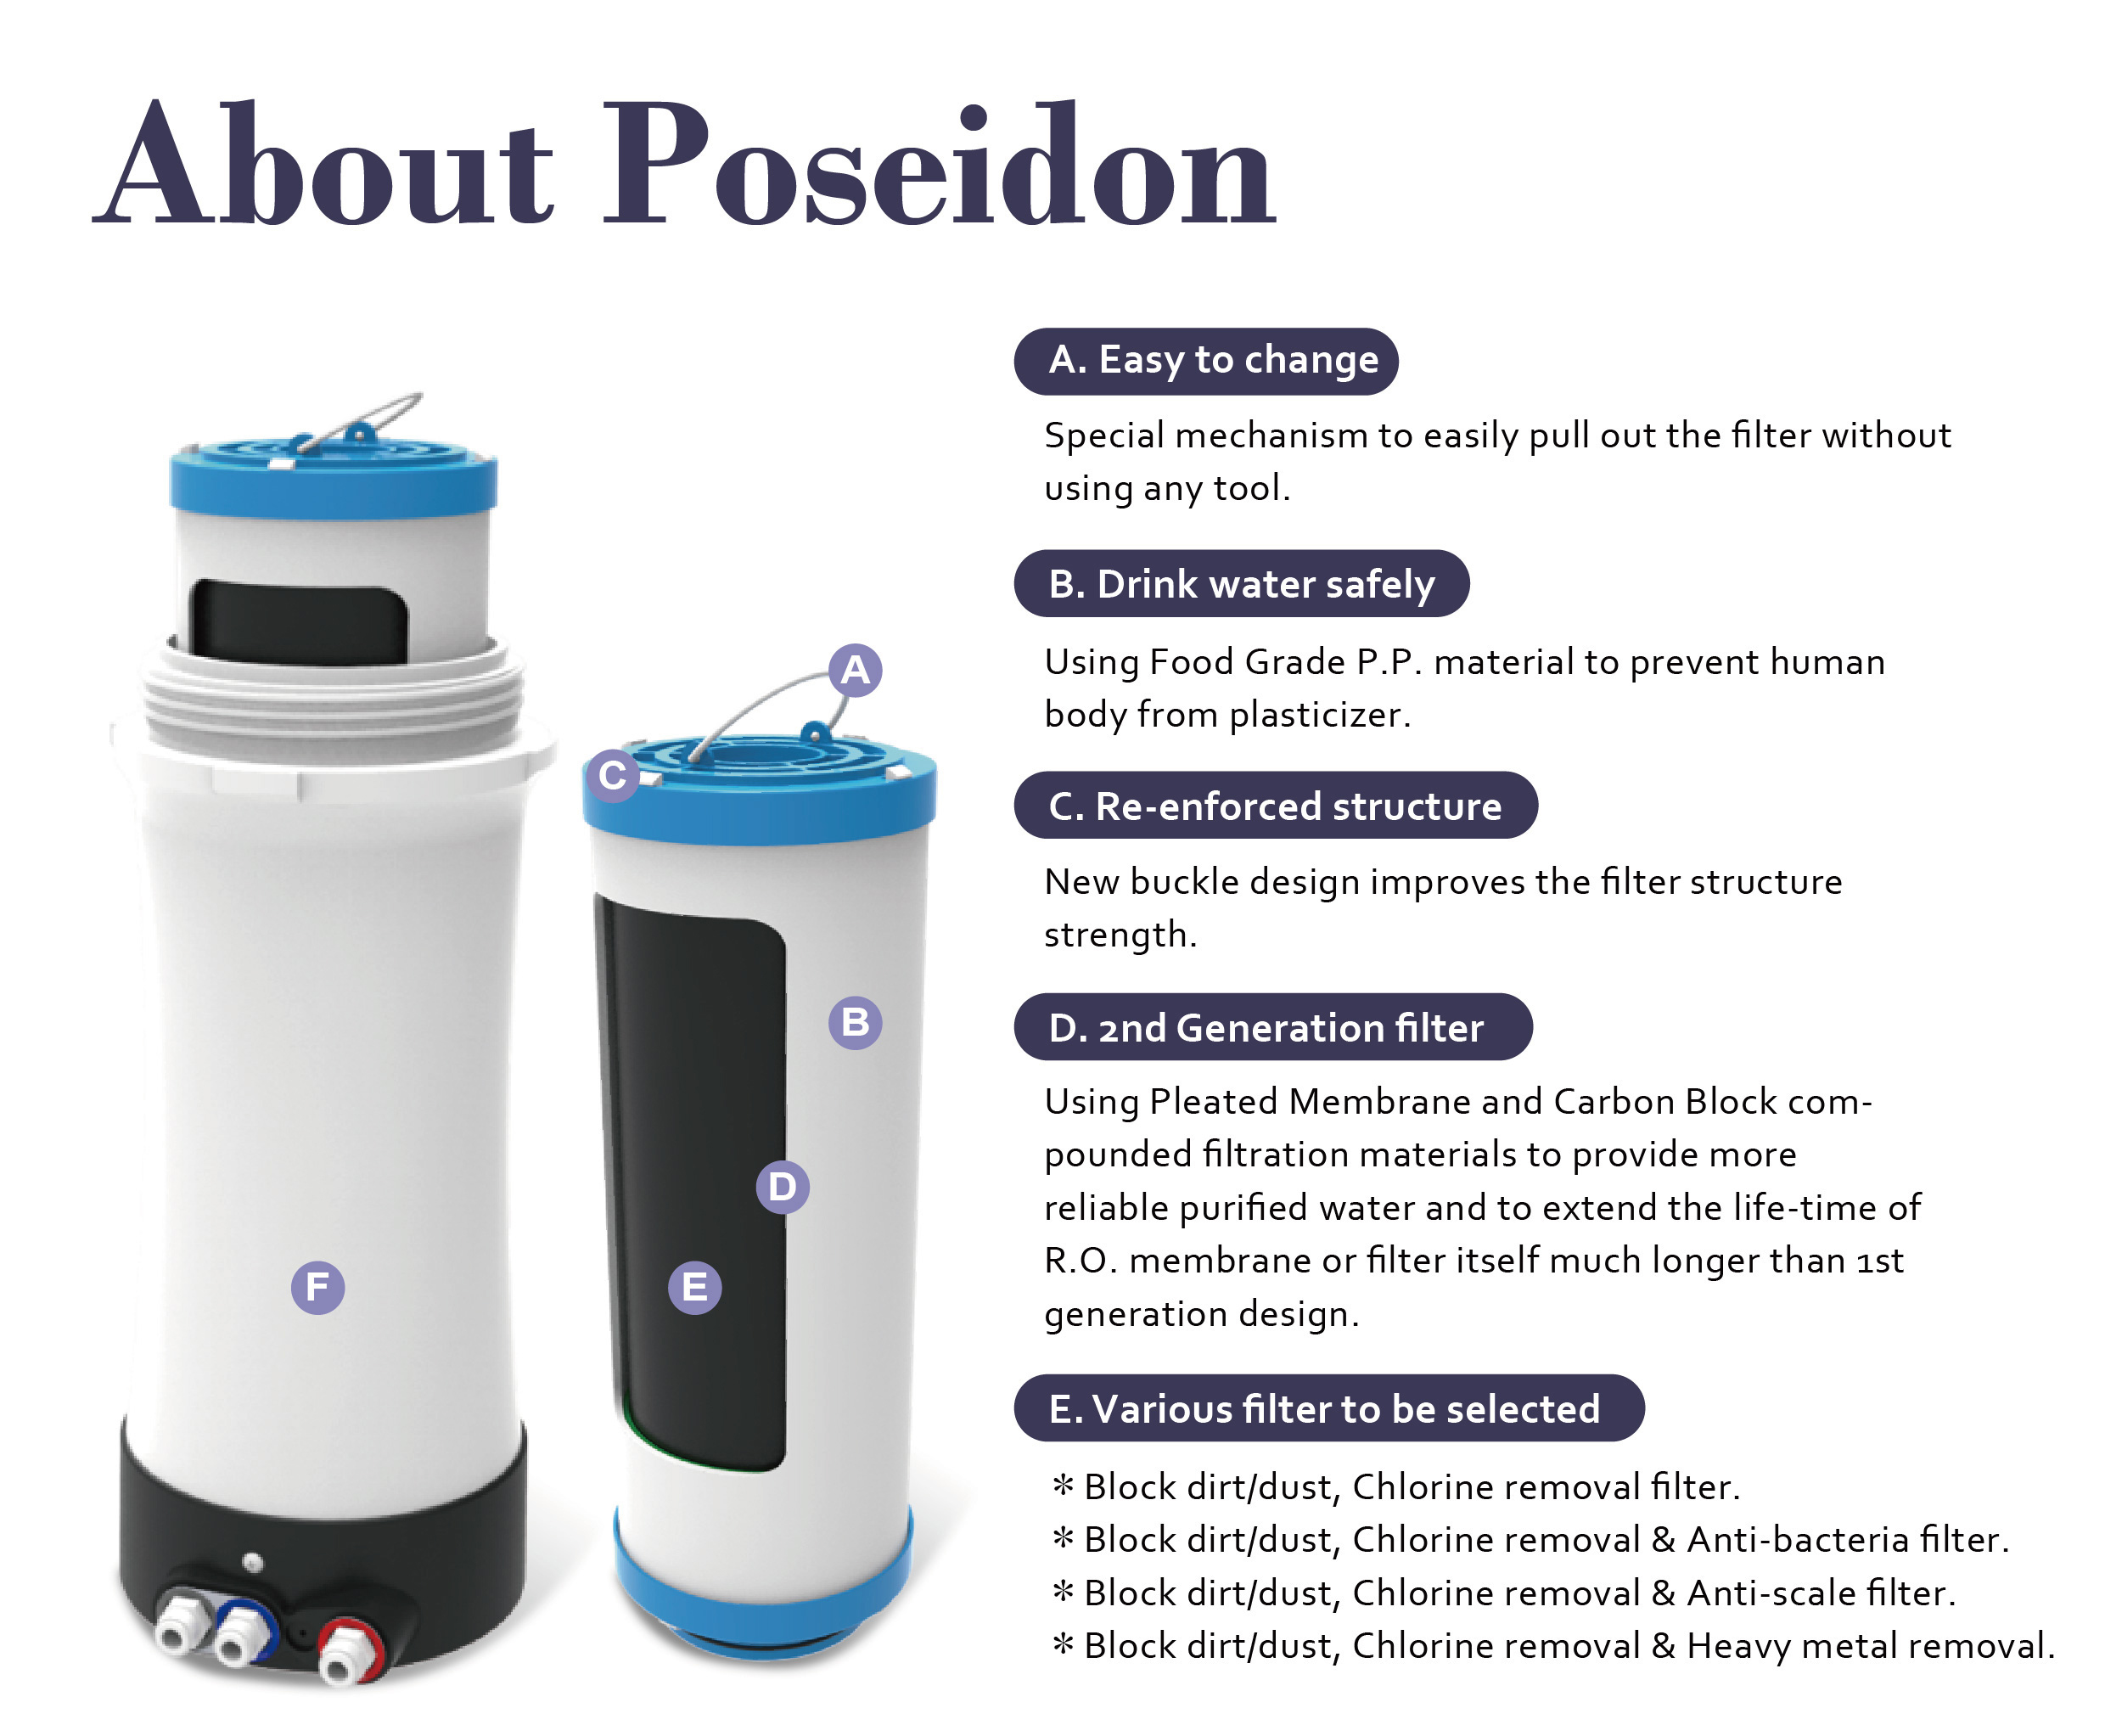 Poseidon Features